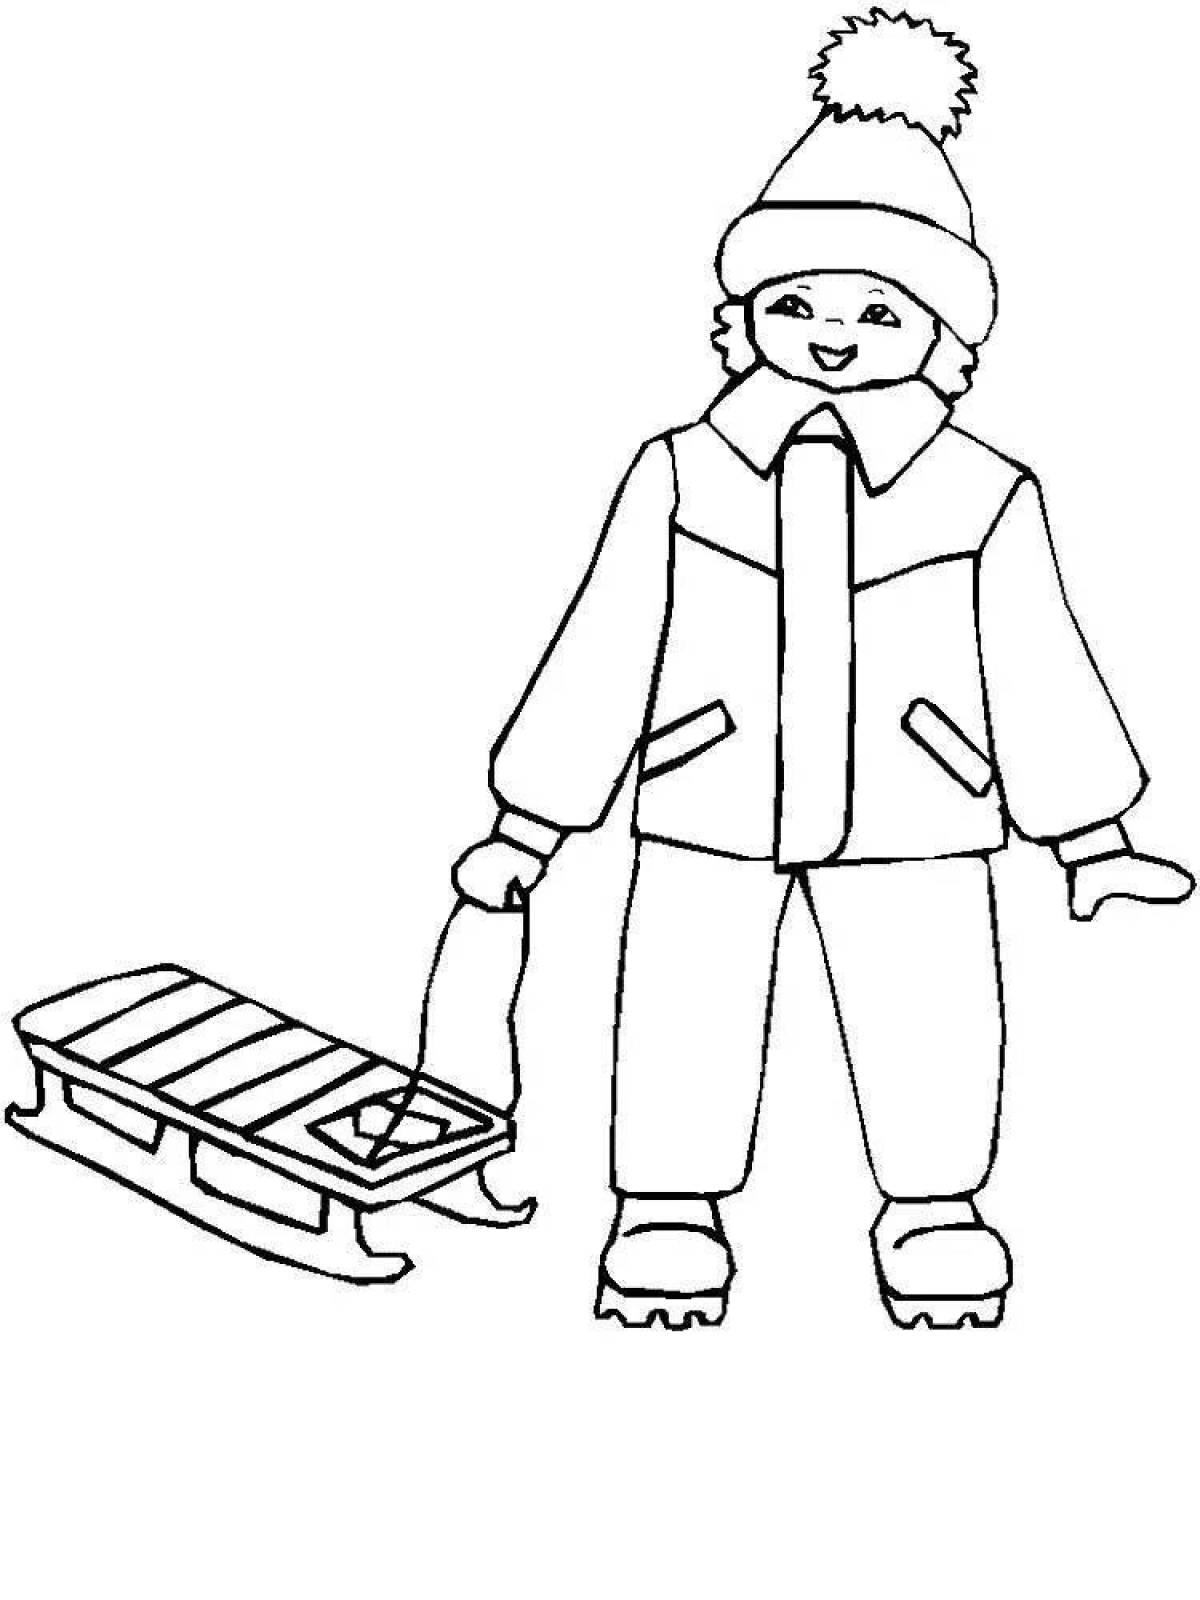 Snug coloring page мальчик в зимней одежде